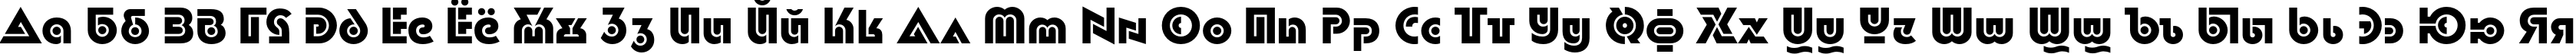 Пример написания русского алфавита шрифтом Dublon Bold